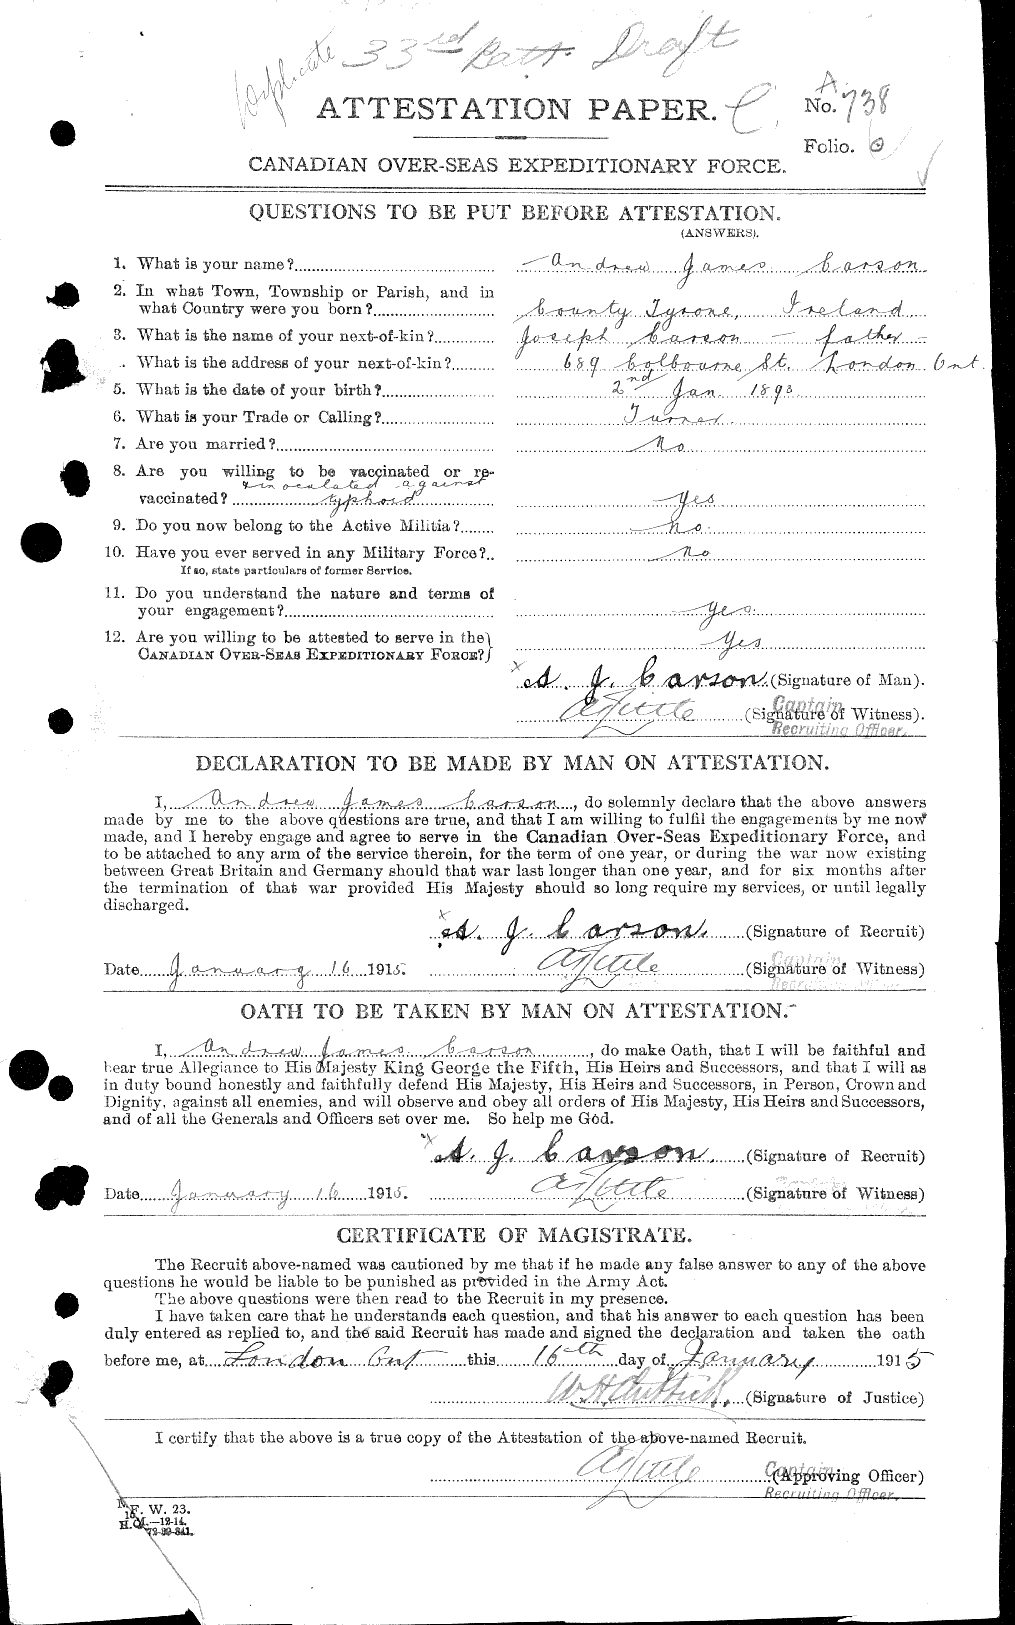 Dossiers du Personnel de la Première Guerre mondiale - CEC 005820a